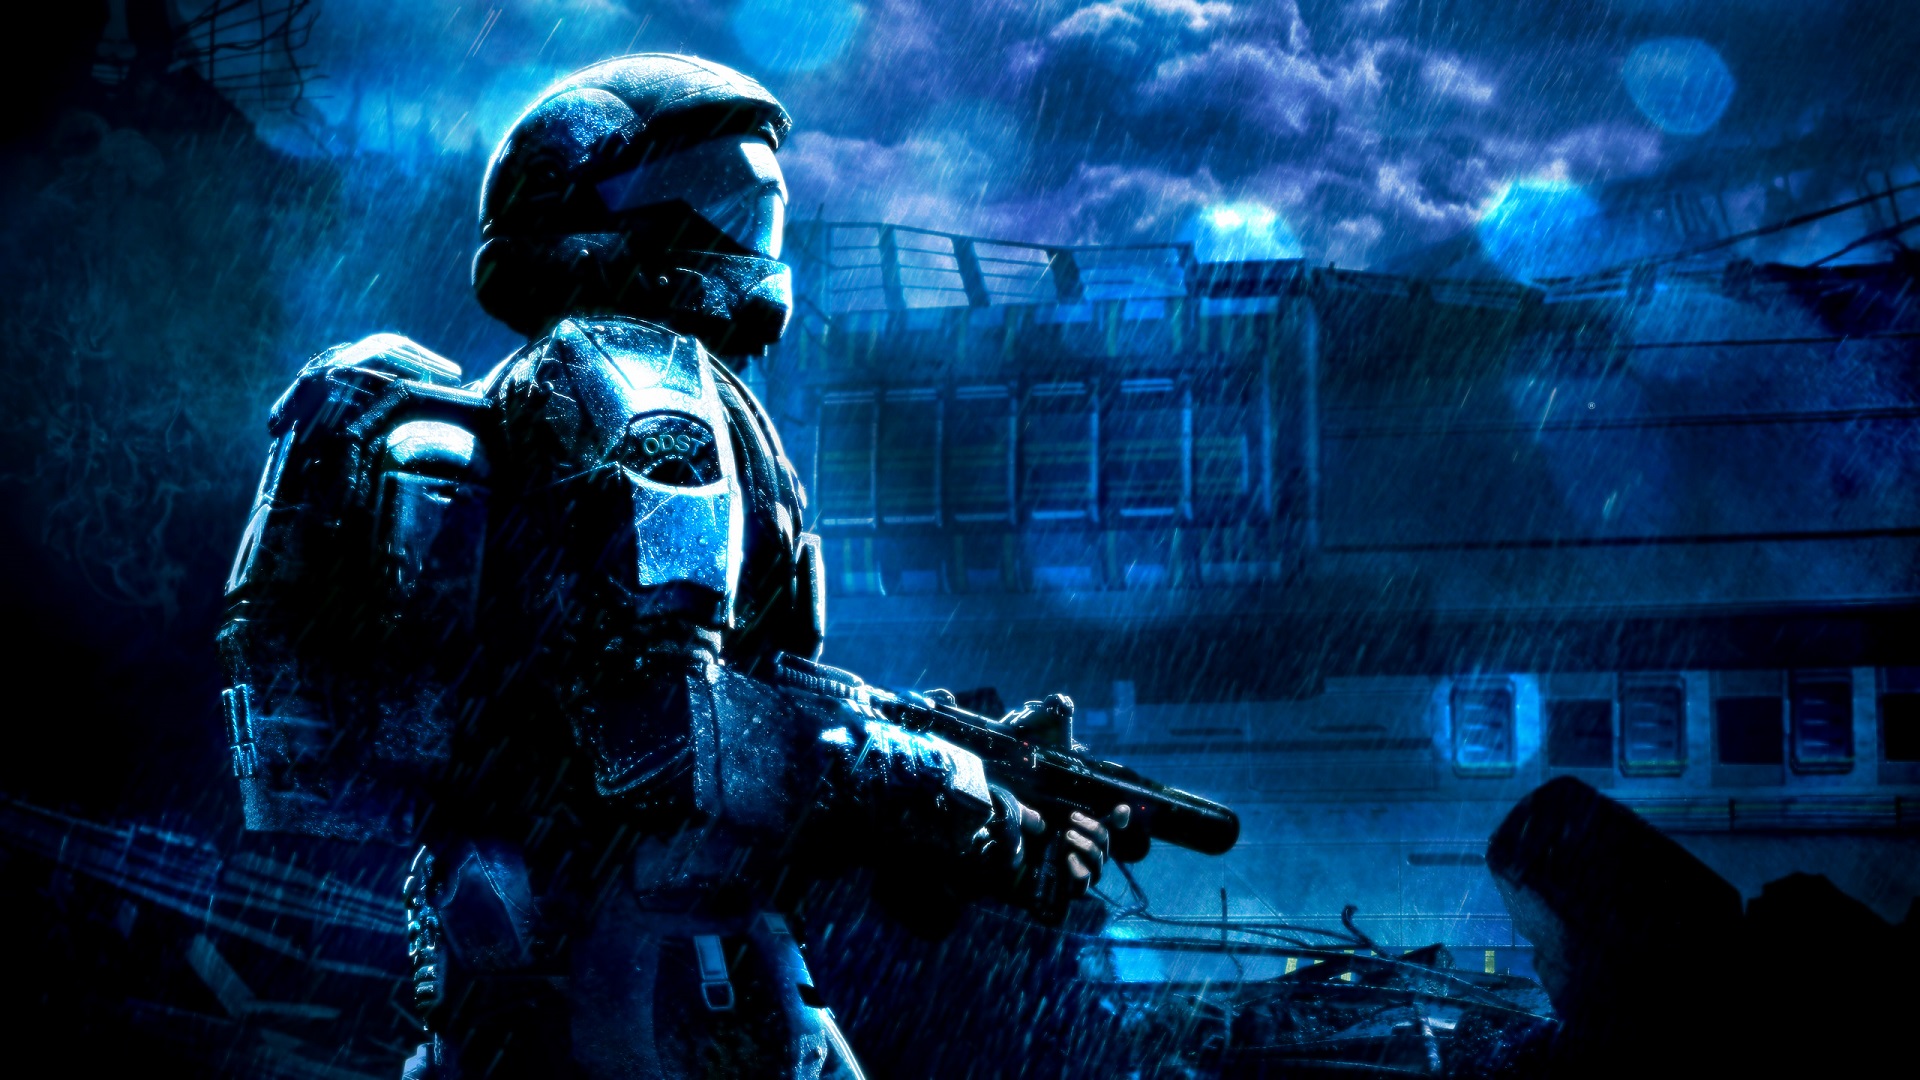 مایکروسافت در گذشته به عرضه بازی Halo روی پلی استیشن فکر کرده بود